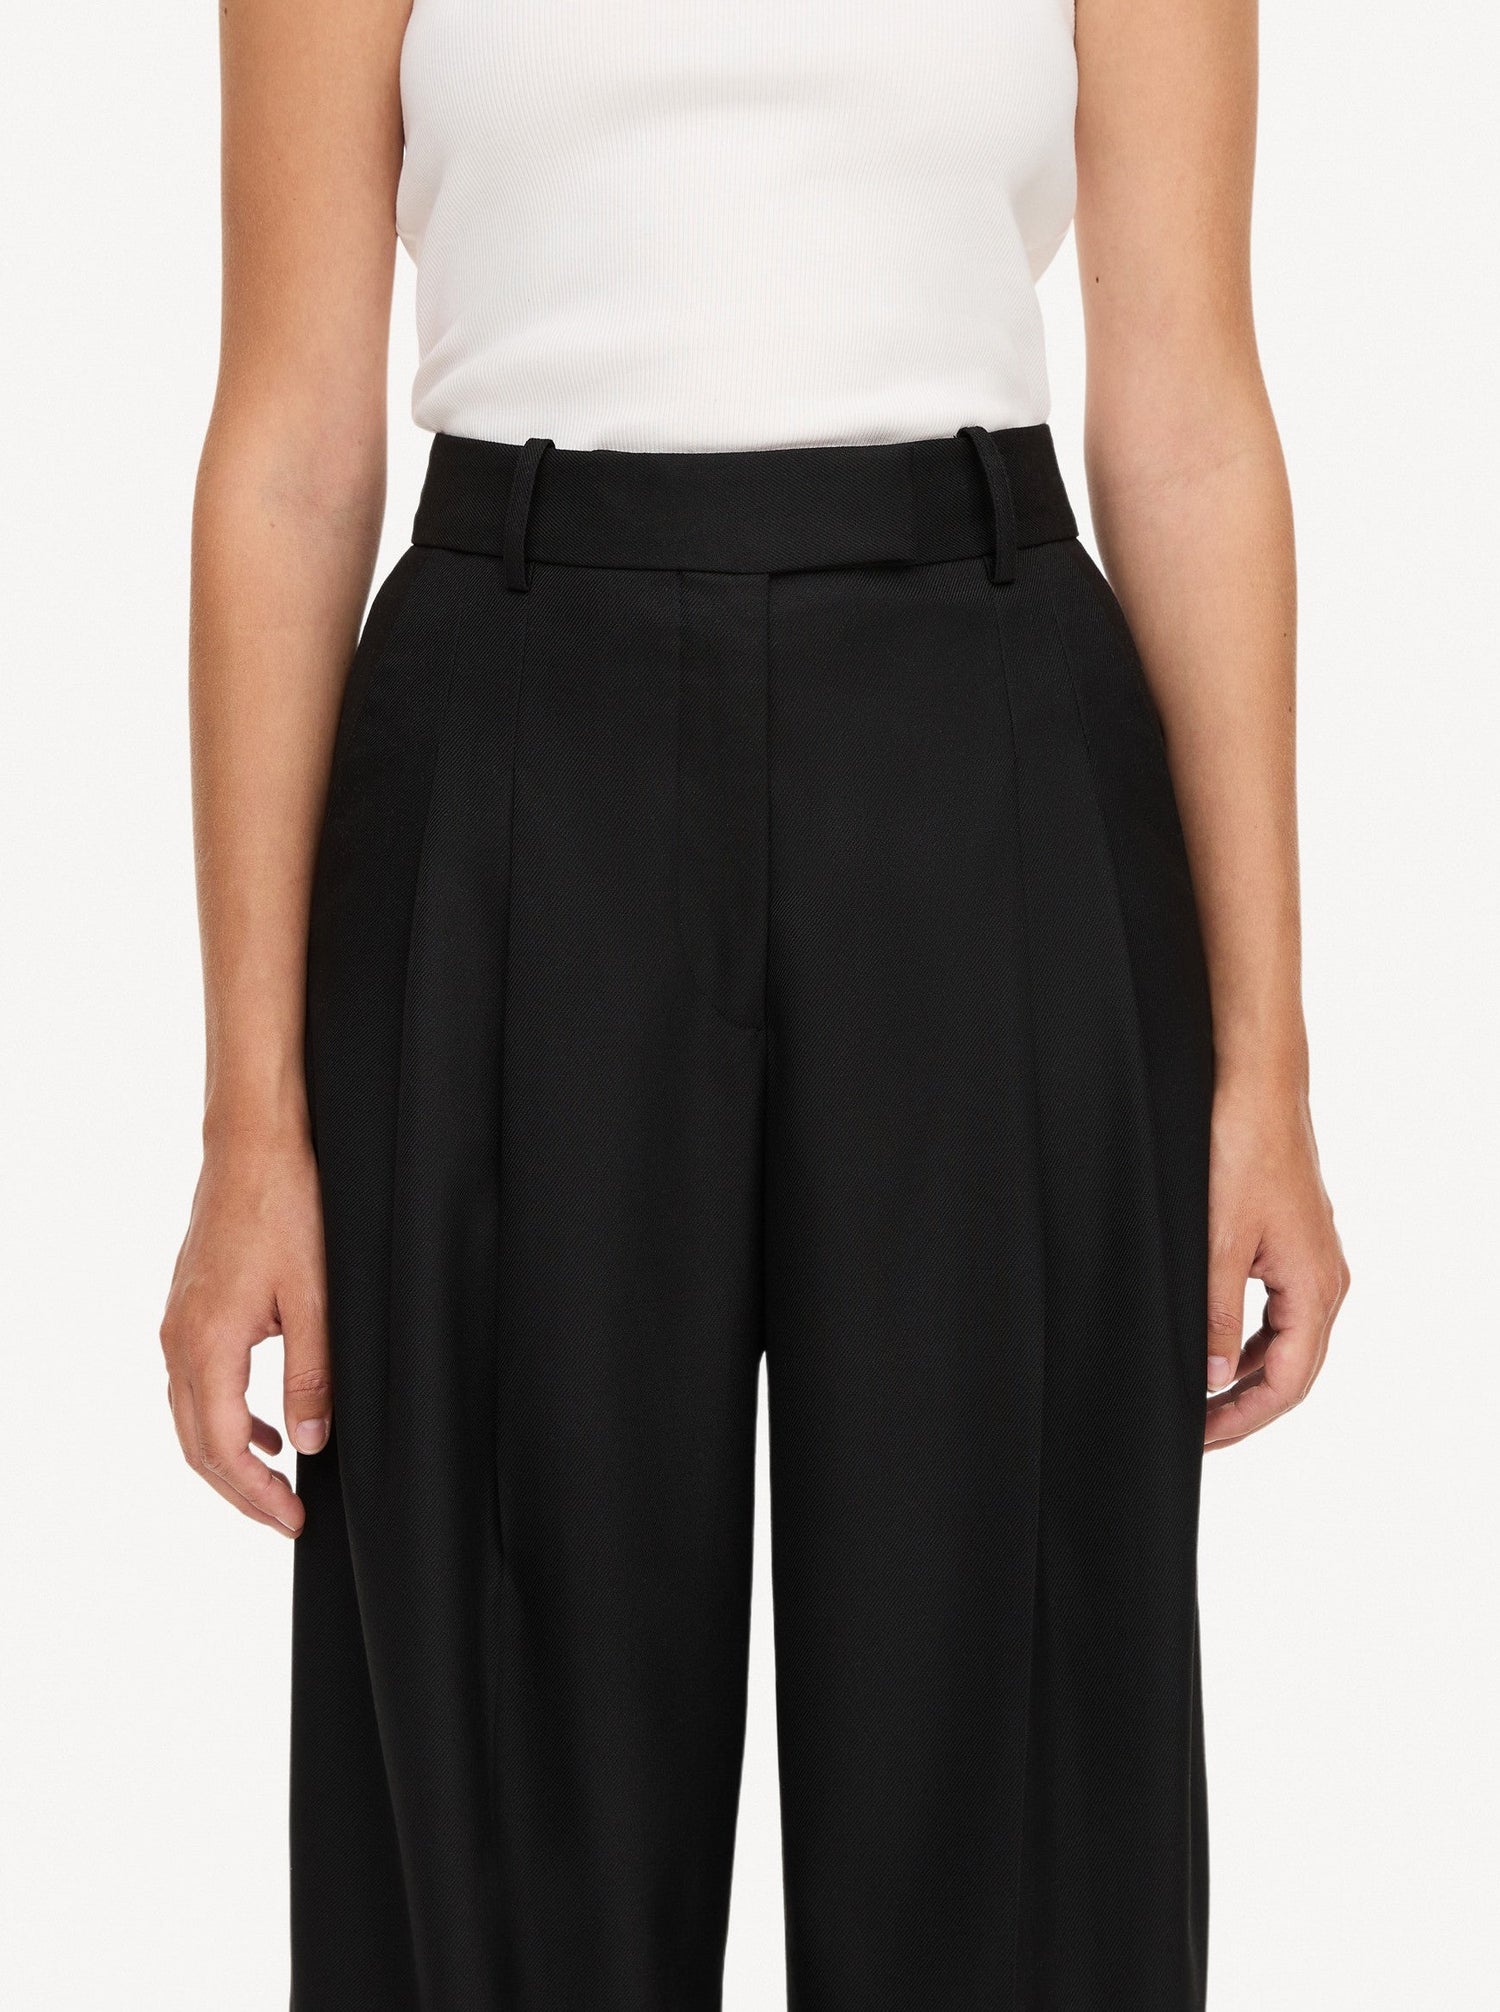 CYMBARIA high-waist trouser, black